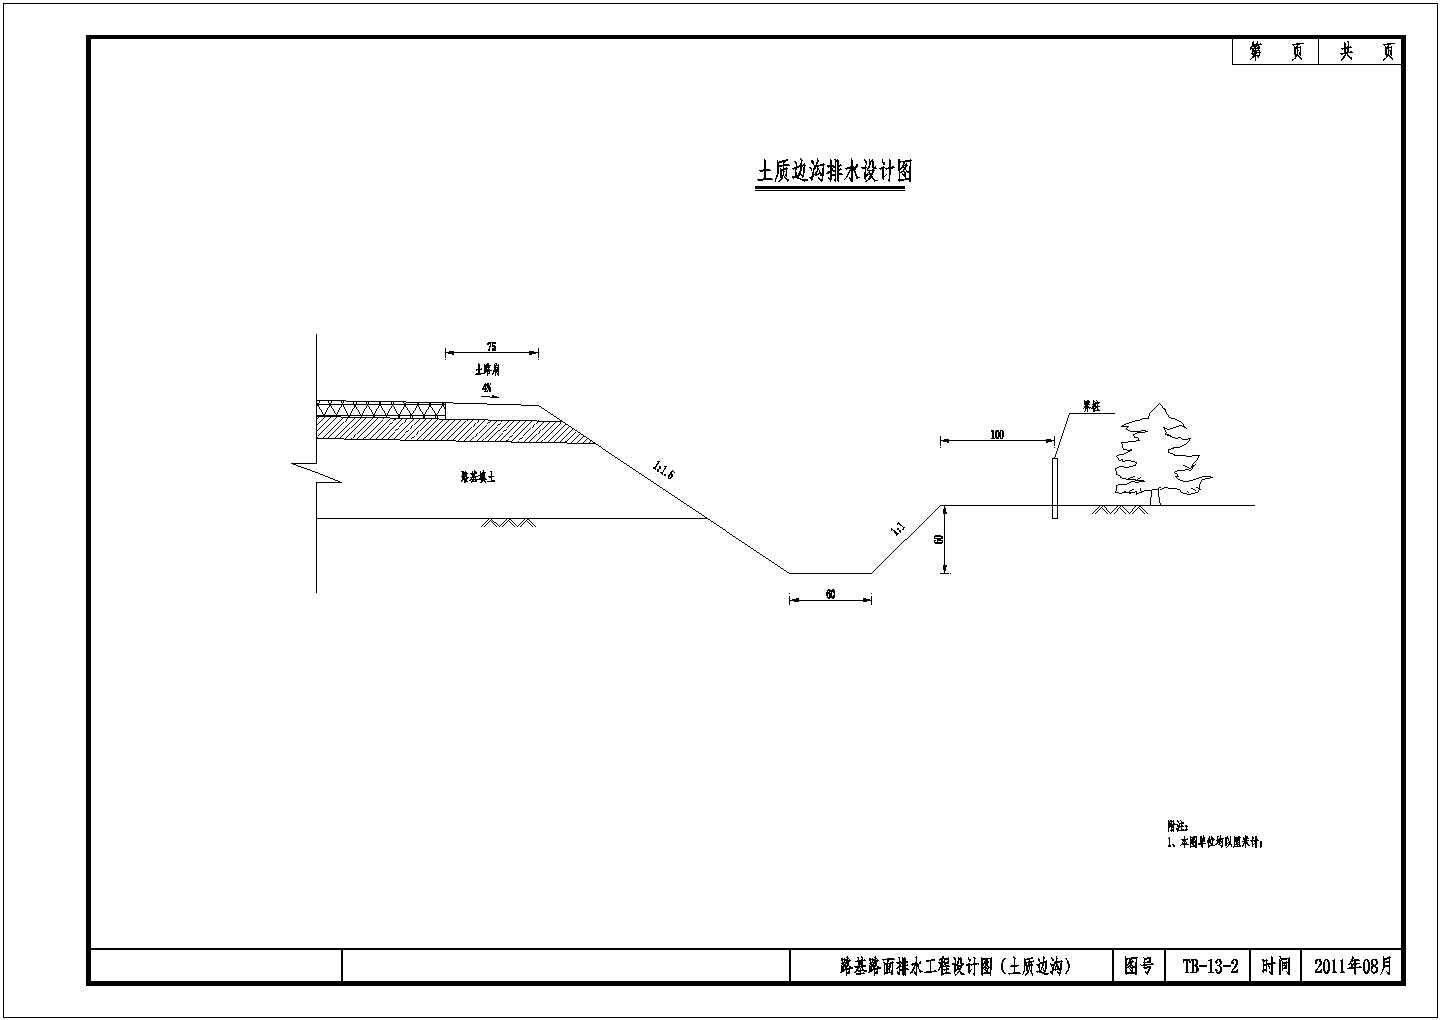 公路改造工程路基路面排水工程(土质边沟)节点详图设计